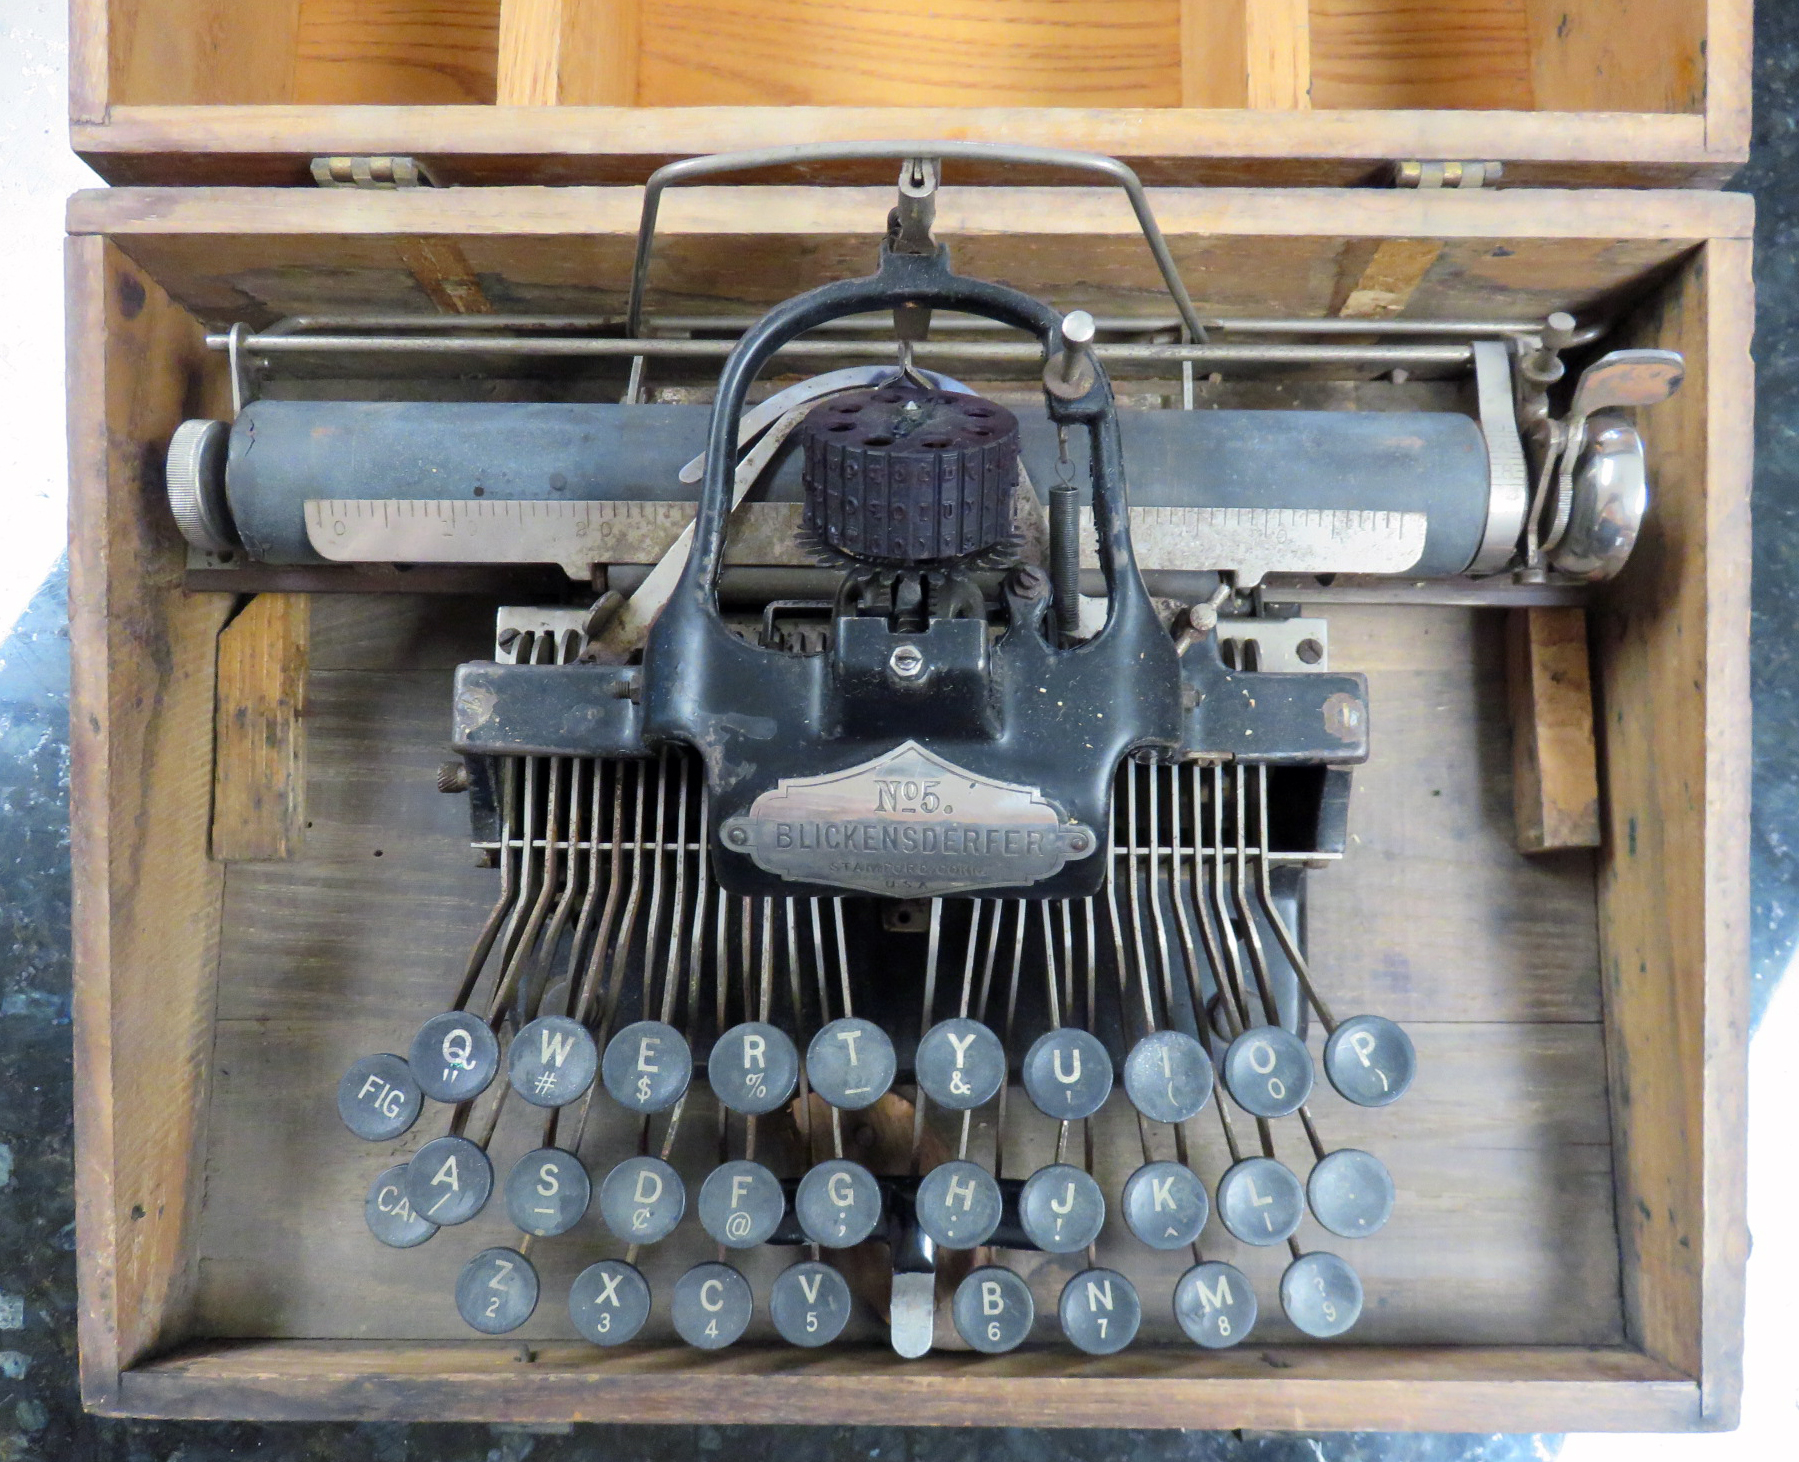 Blickensderfer No. 5 Typewriter